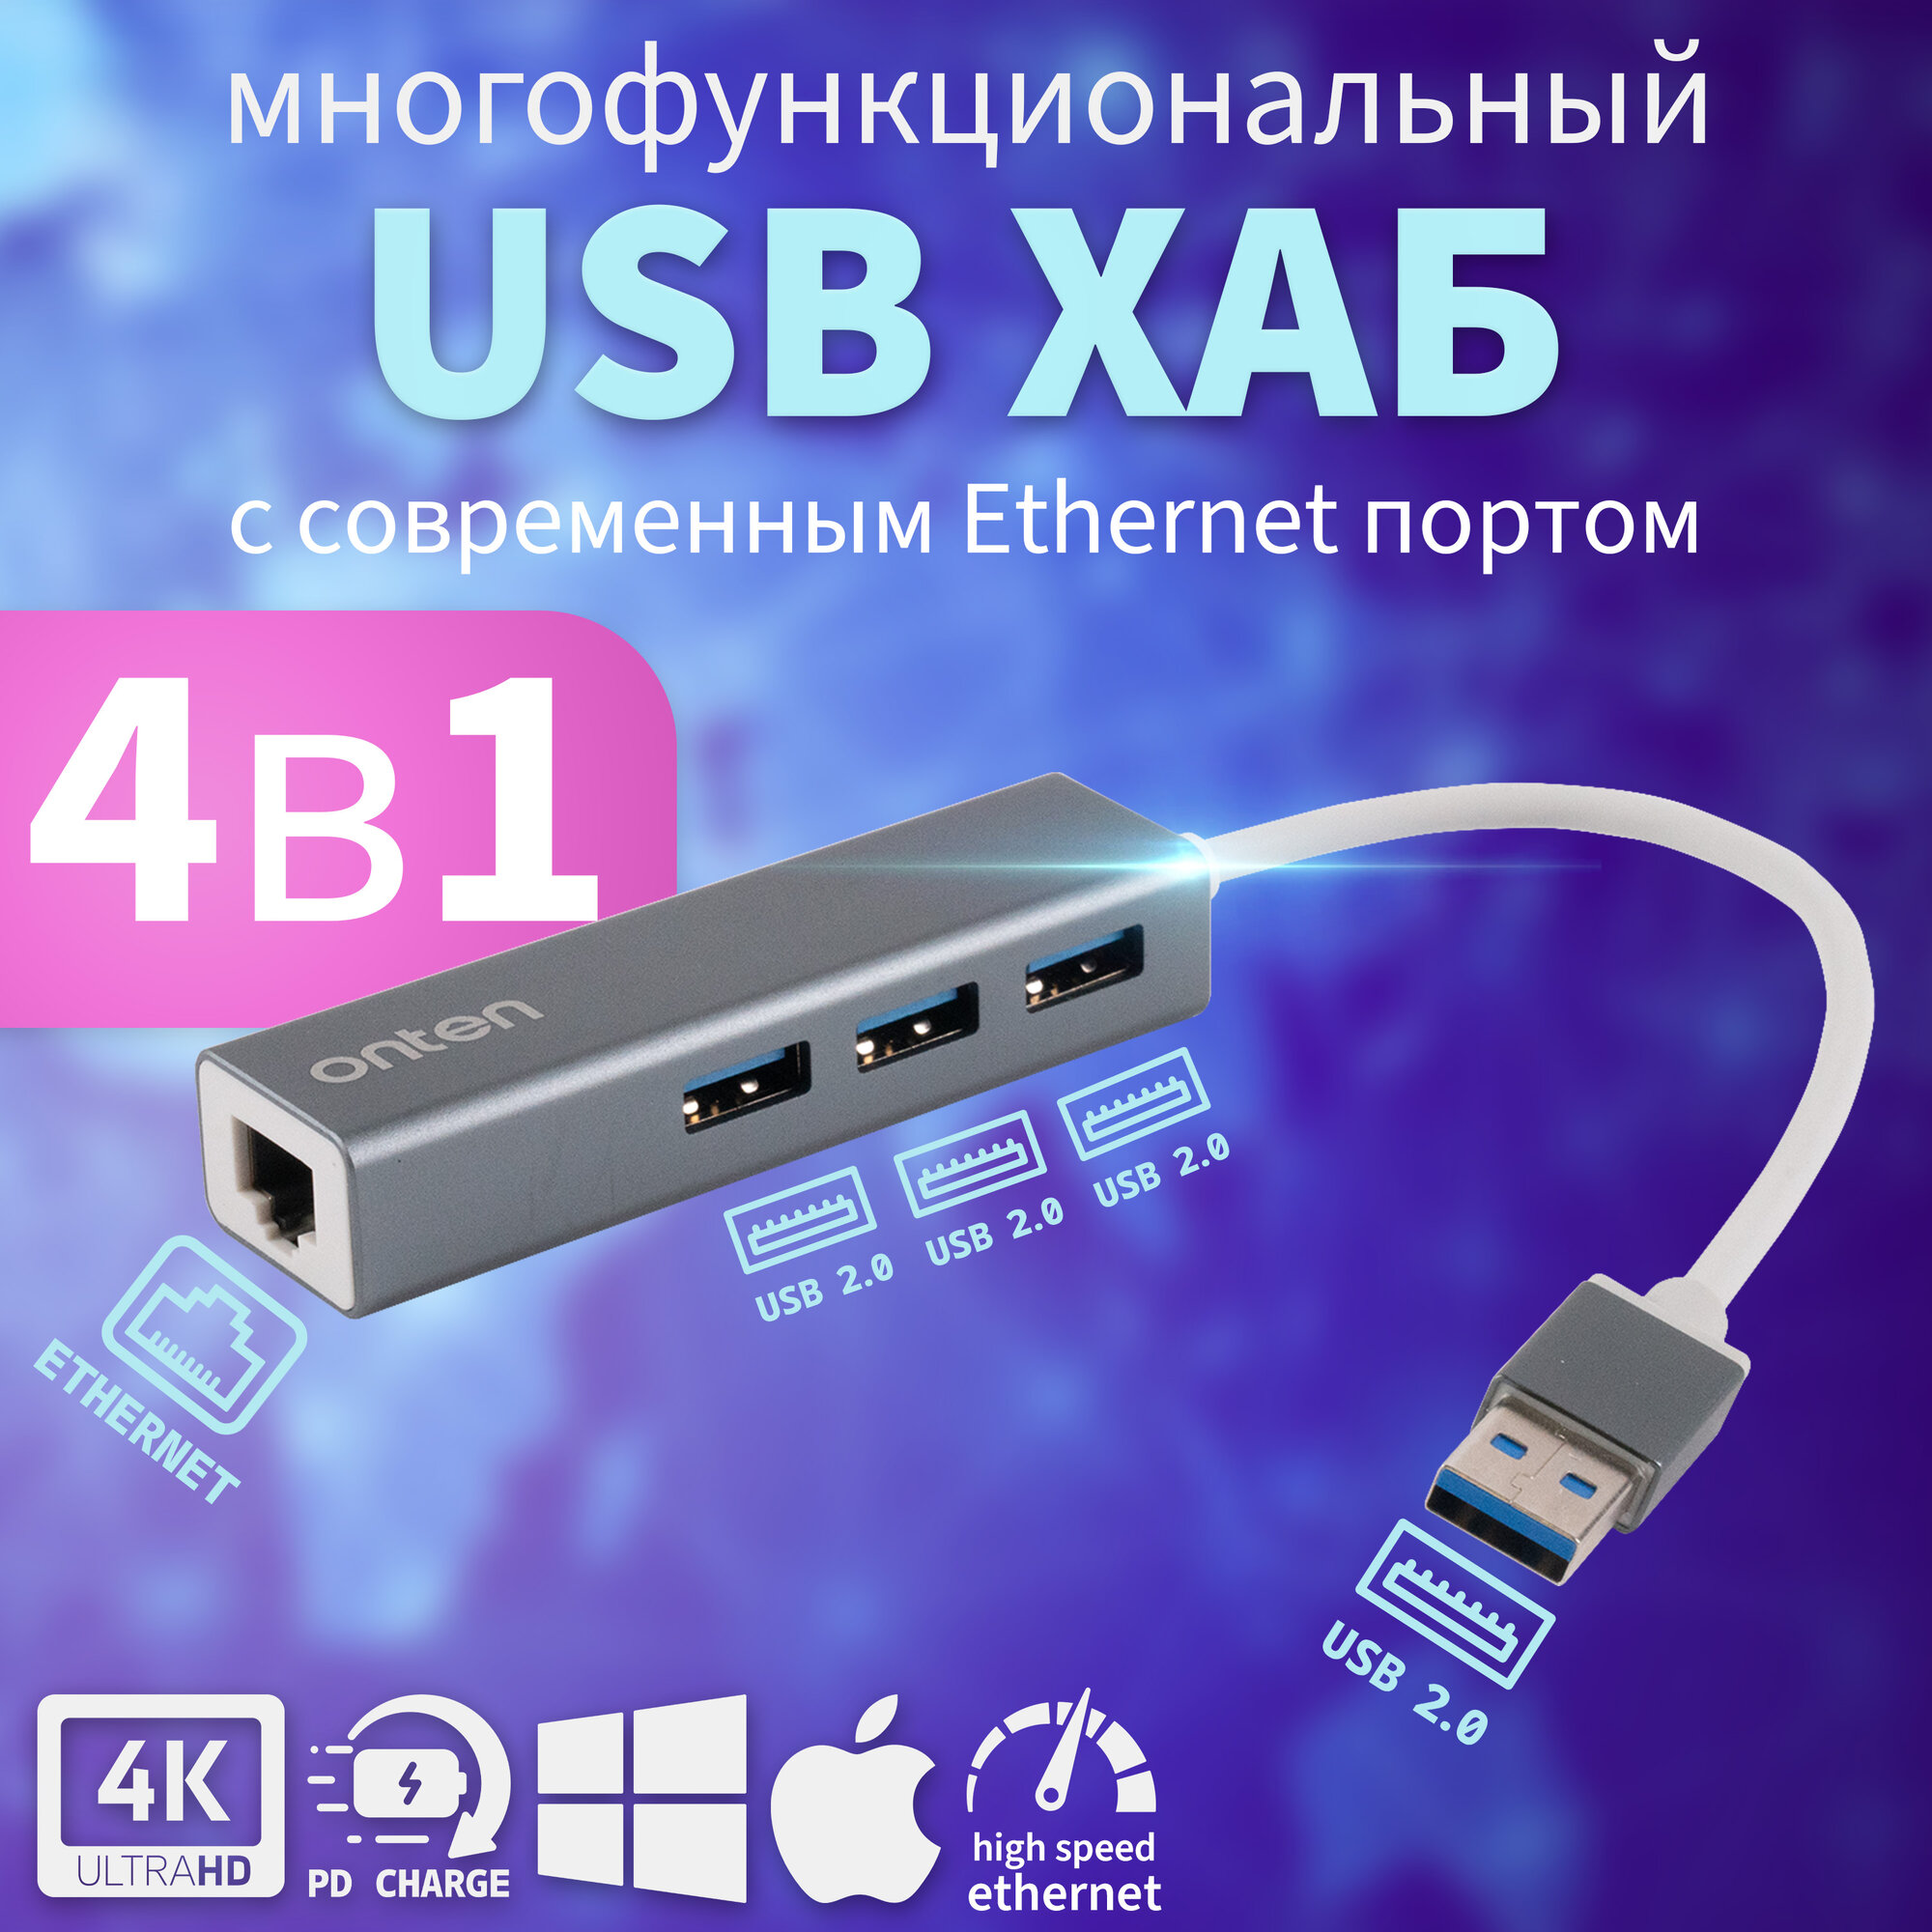 Компактный USB-хаб Onten OTN-5226 (4-в-1) с Ethernet адаптером и 3 портами USB 2.0